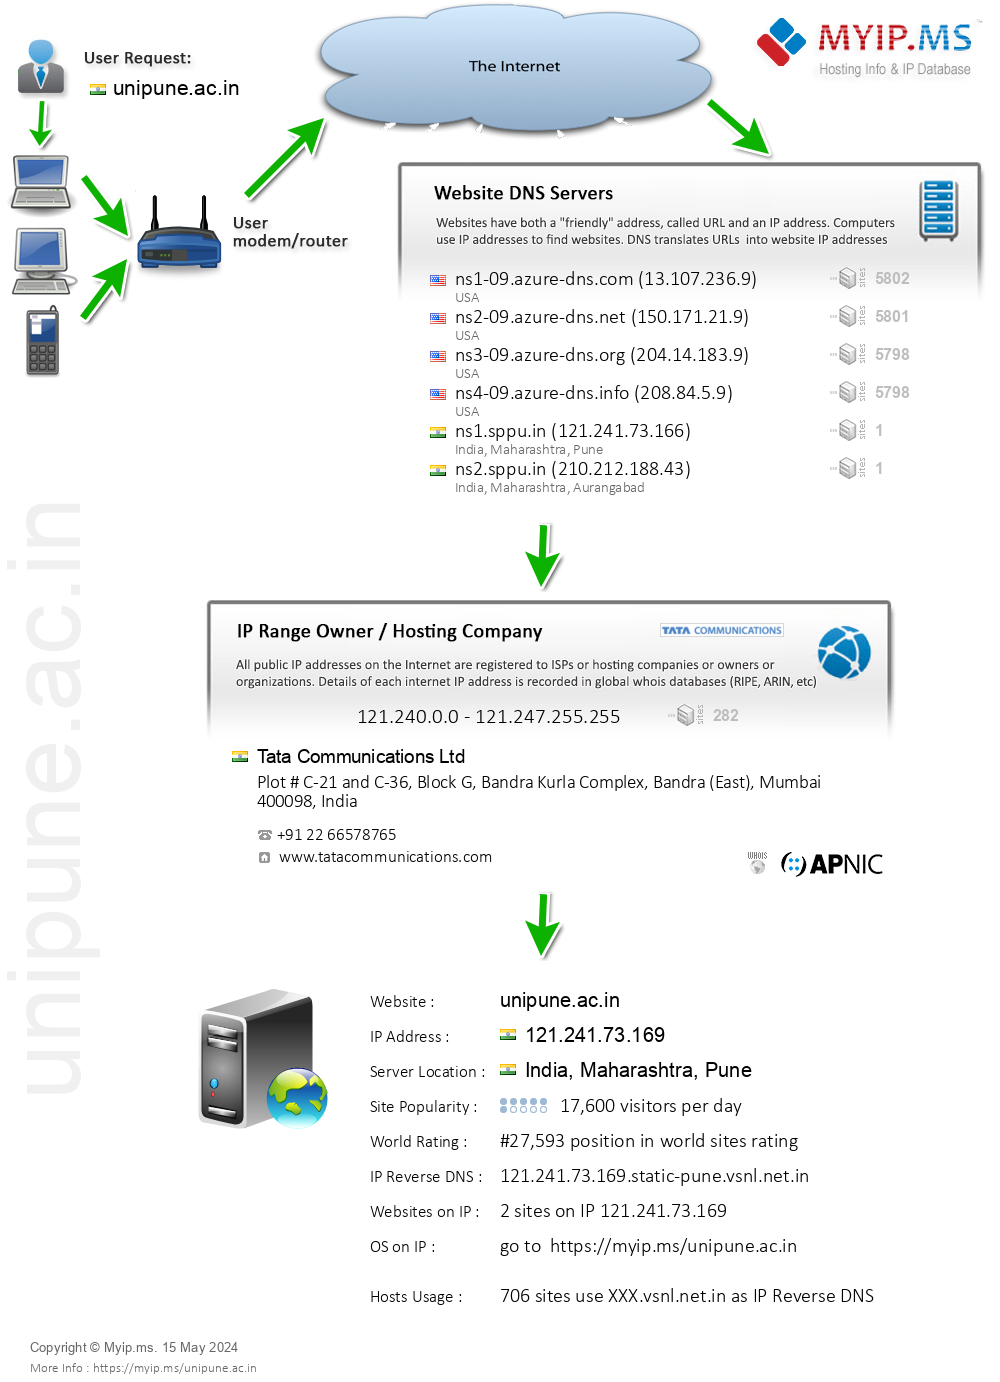 Unipune.ac.in - Website Hosting Visual IP Diagram